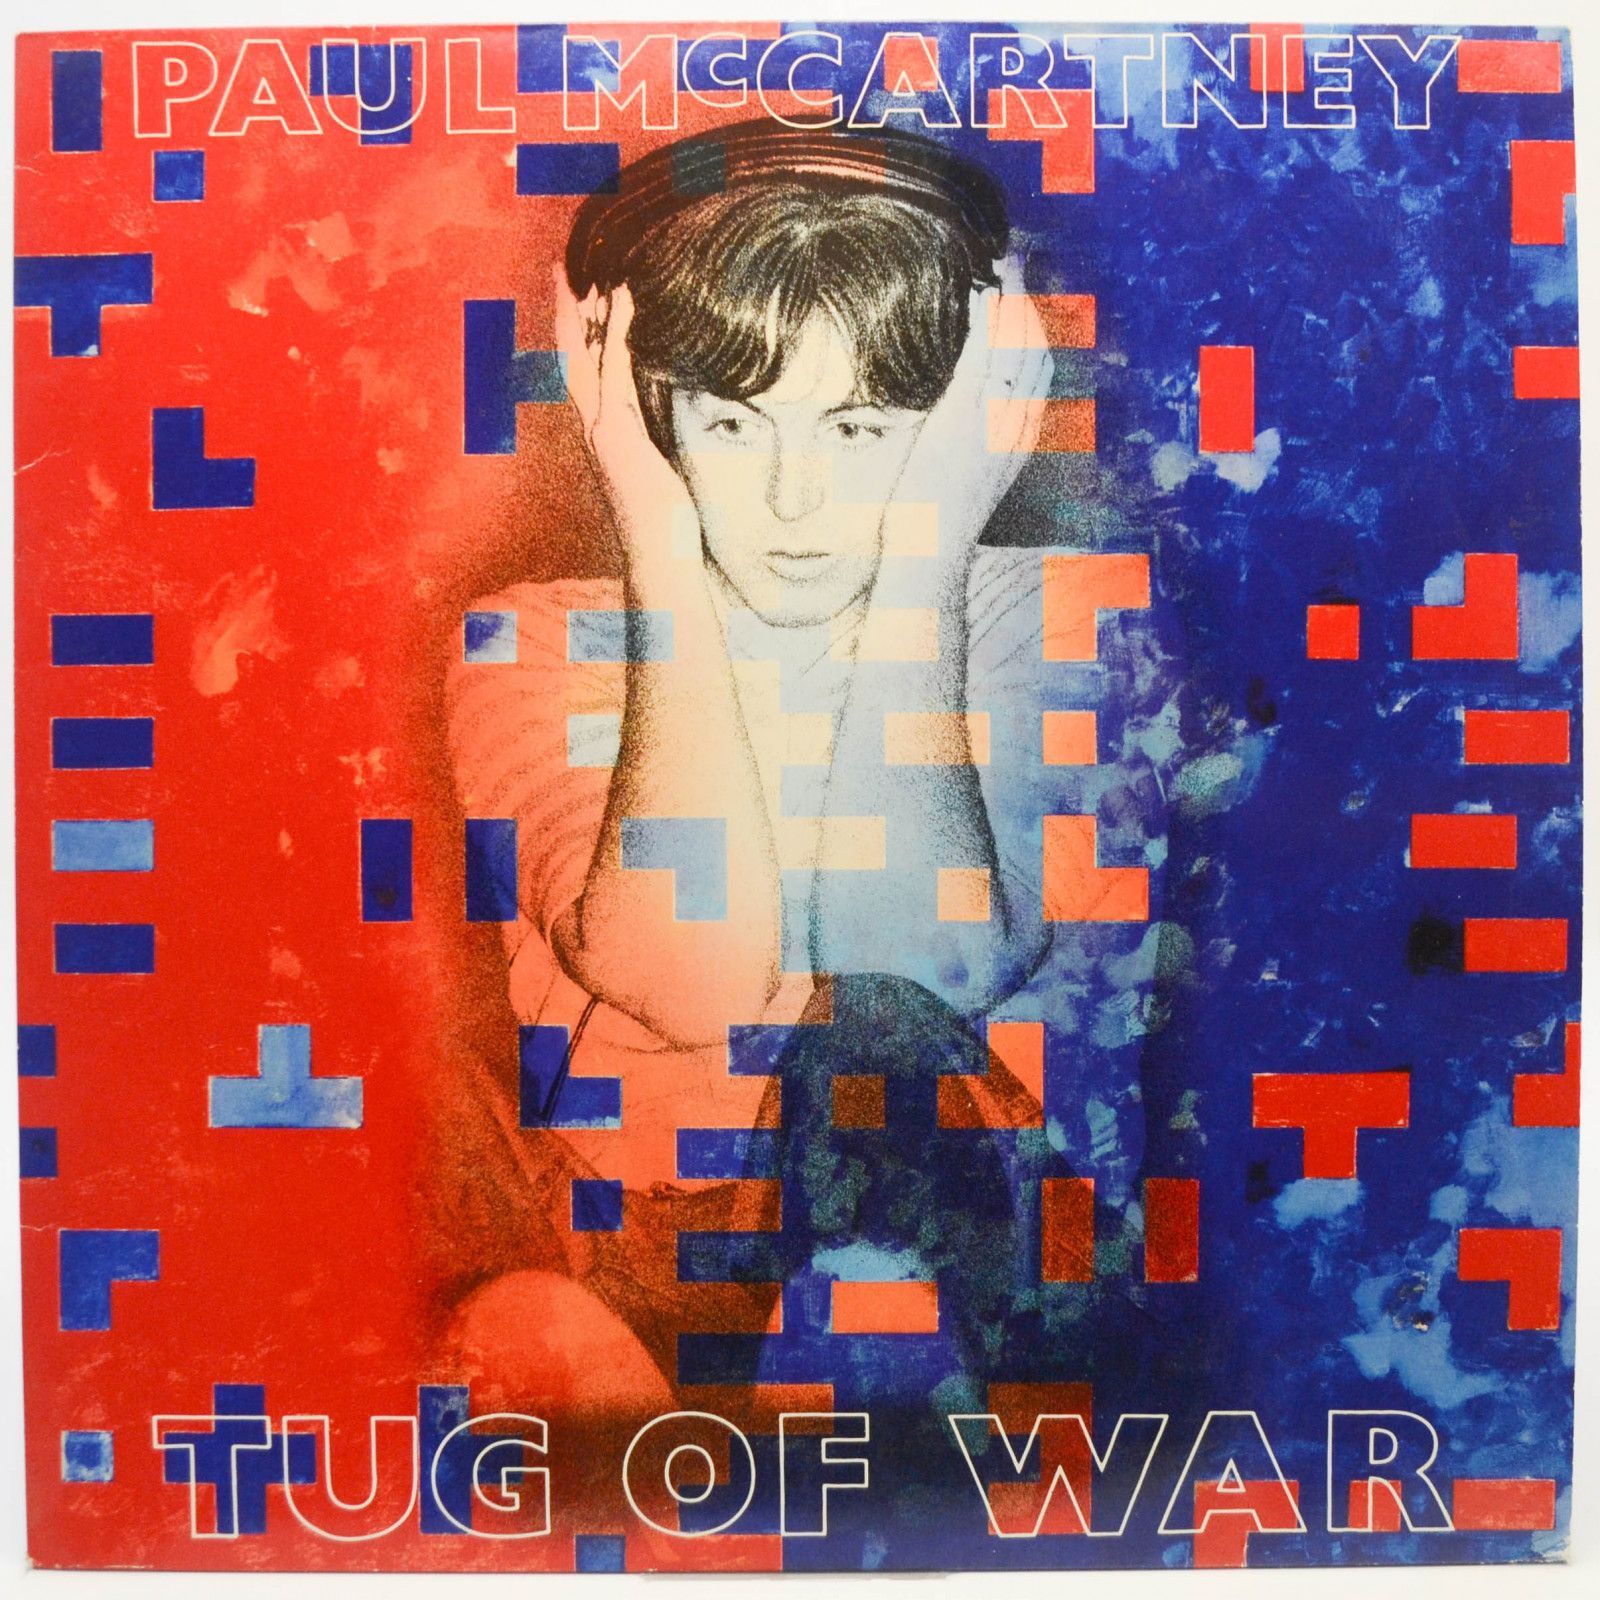 Paul McCartney — Tug Of War, 1982